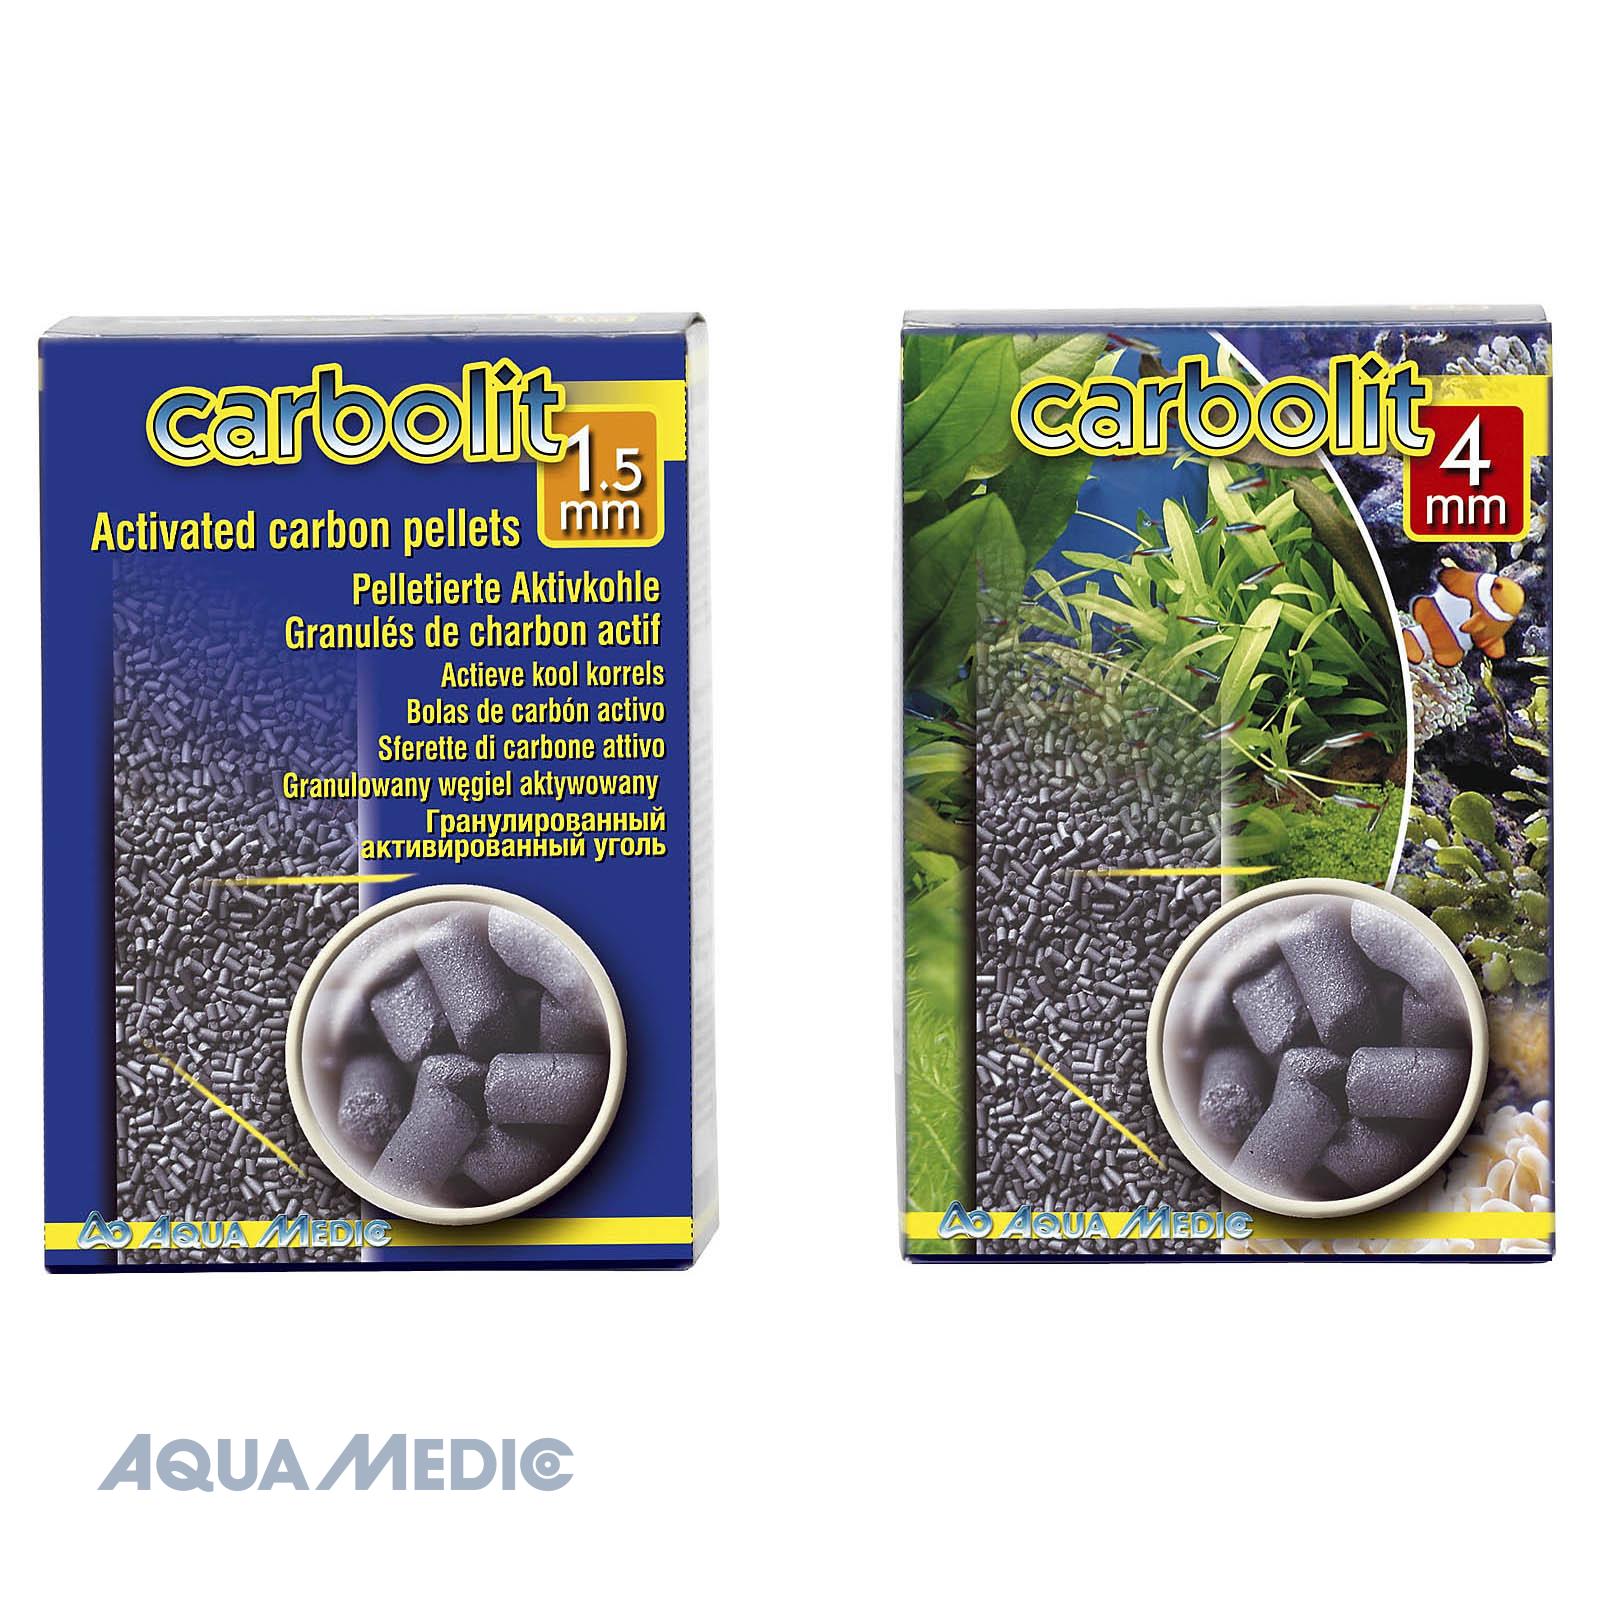 Aqua Medic carbolit